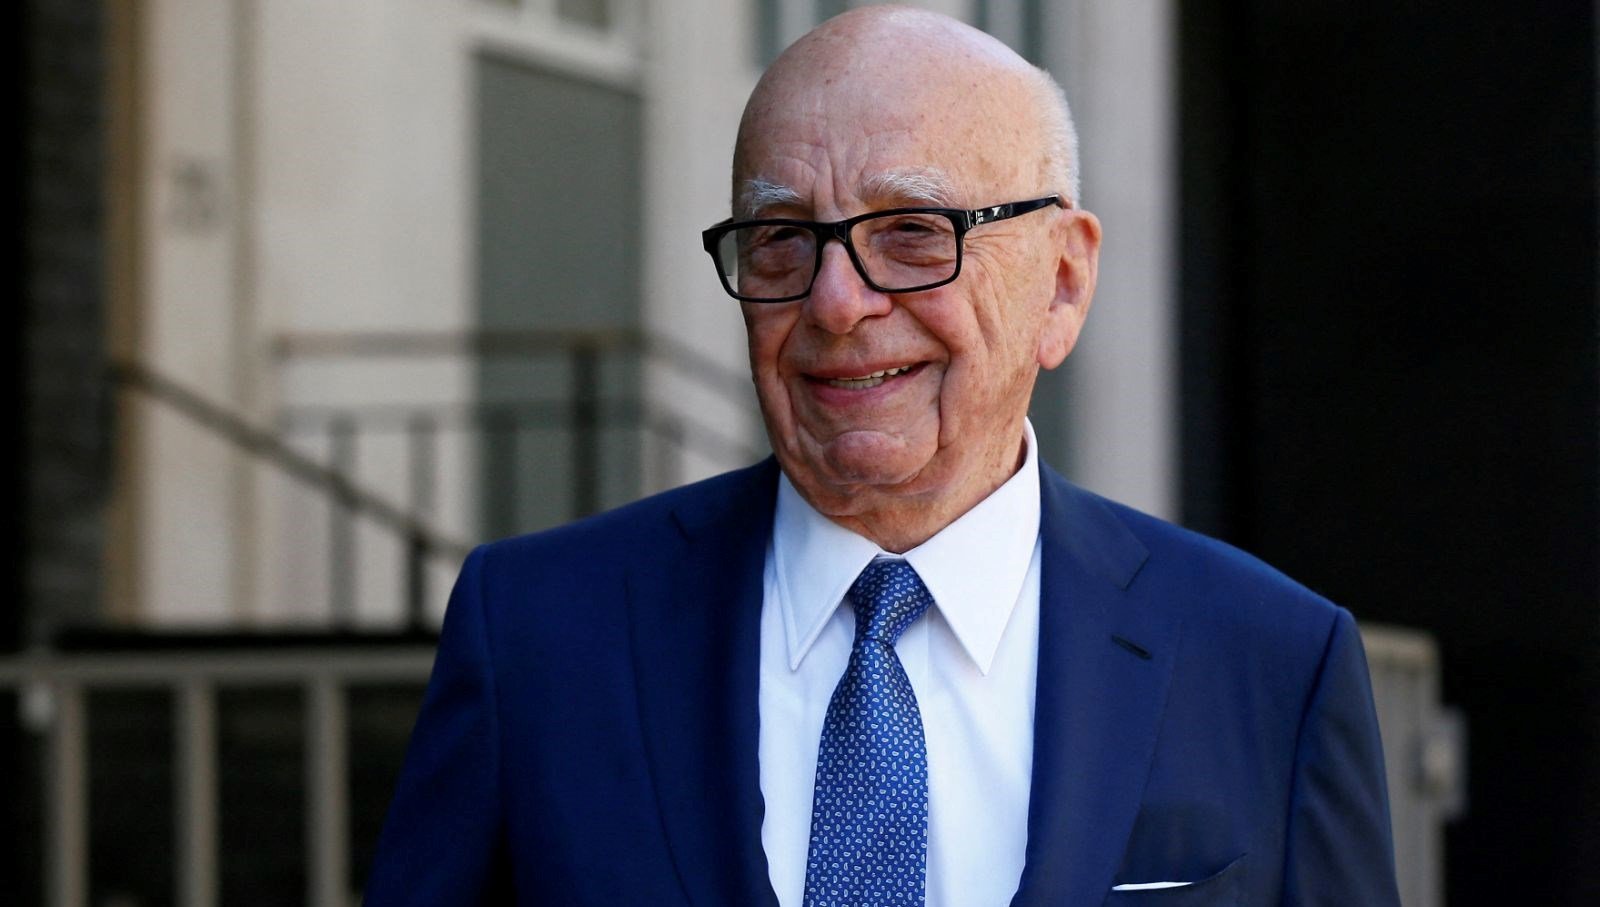 Dünya medyasında bir devrin sonu | Rupert Murdoch, koltuğu oğluna bıraktı